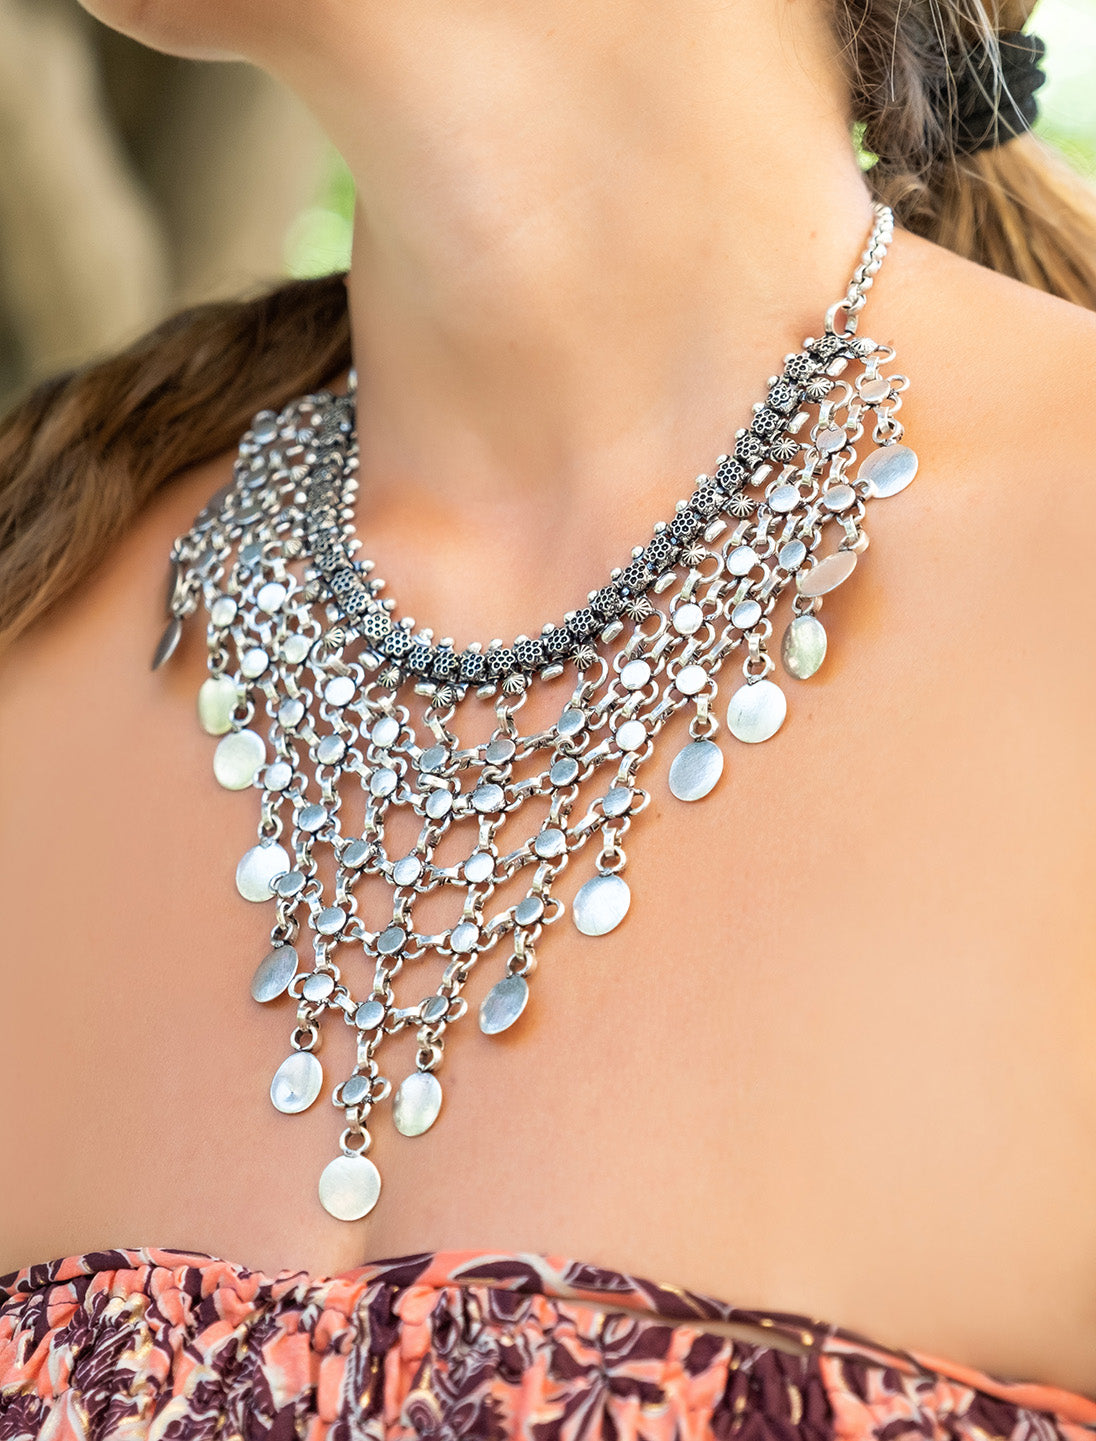 Antique style rigid collar silver necklace